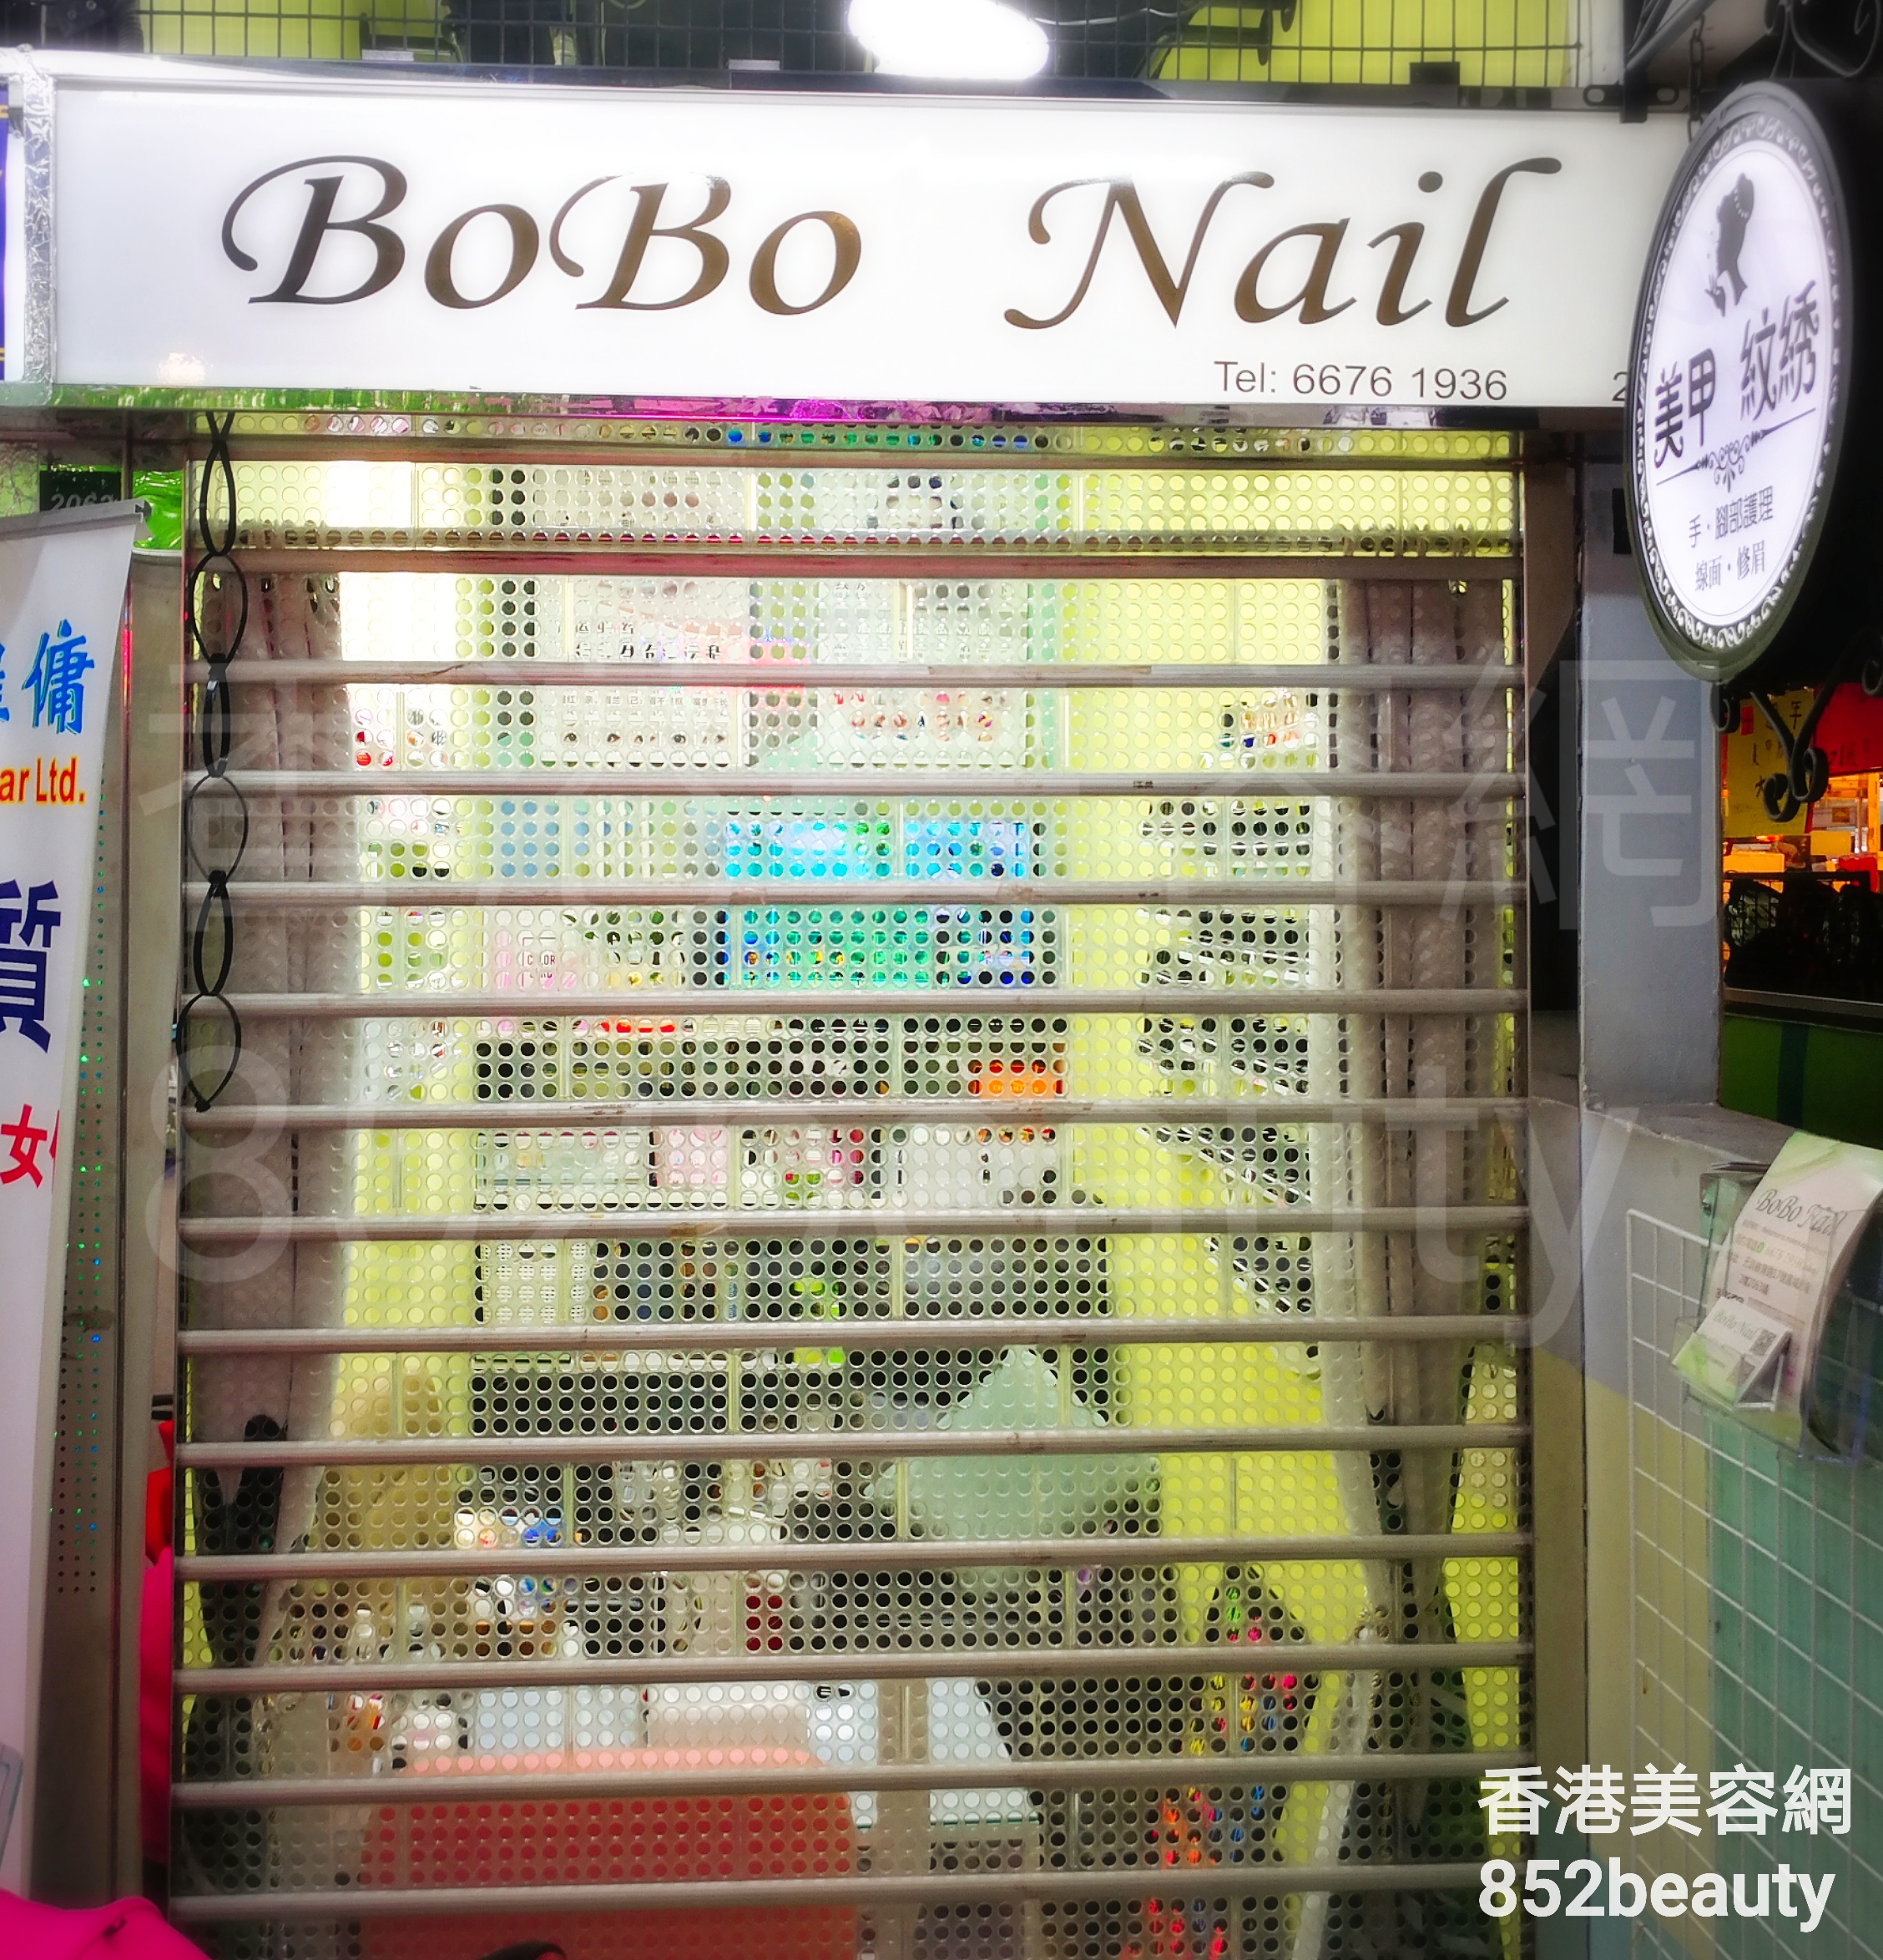 : BoBo Nail